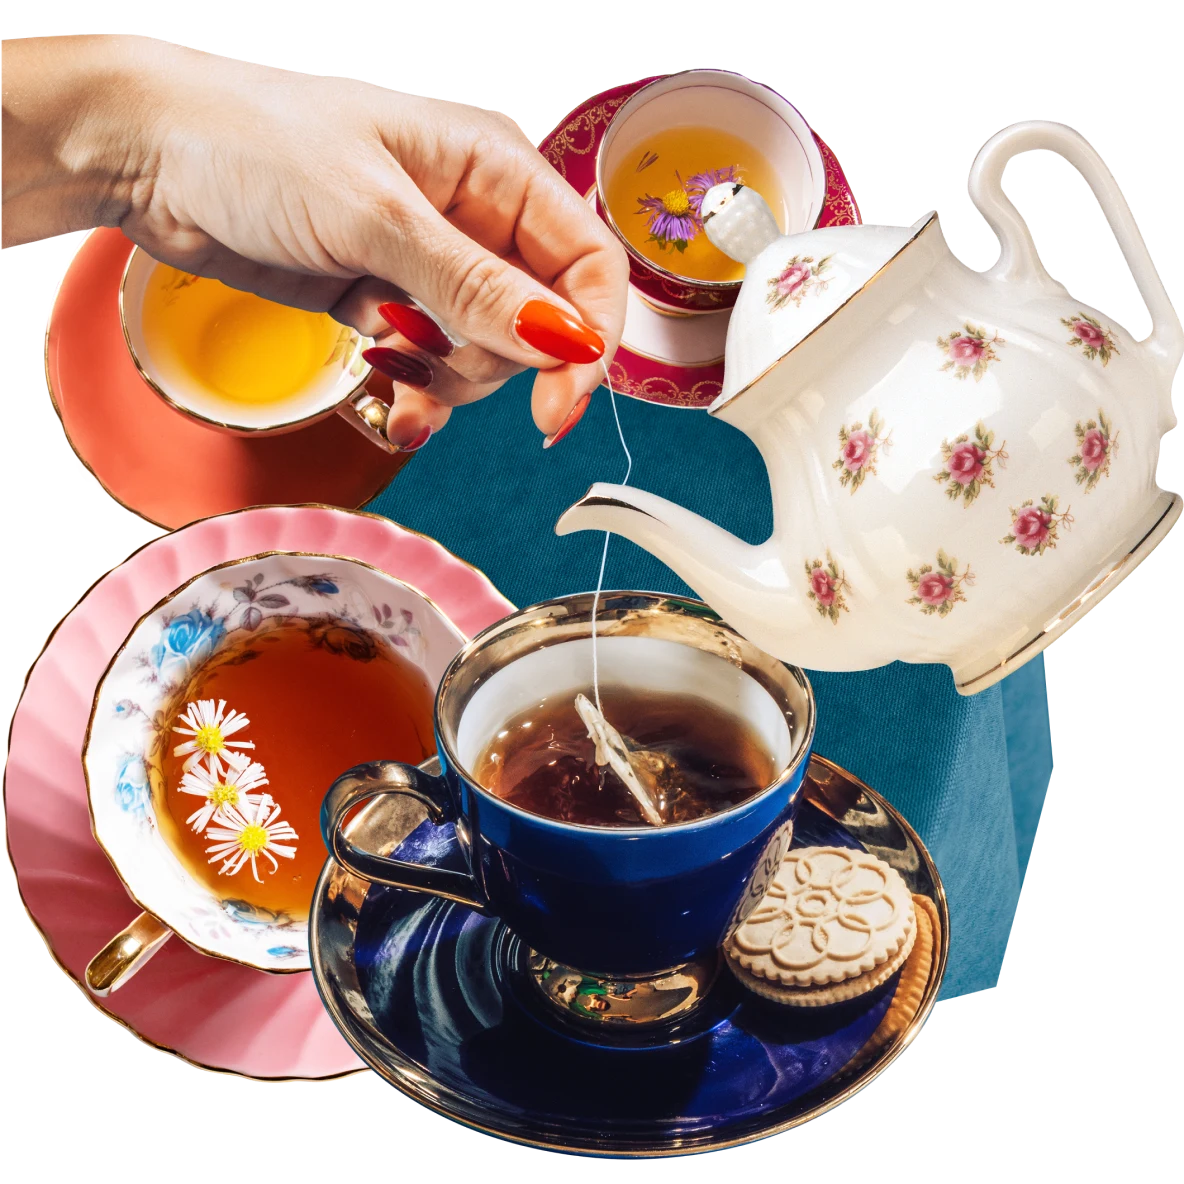 Collage de tasses à thé remplies de thé plus ou moins foncé. Théière blanche inclinée et décorée de roses roses. Main d'une personne blanche qui trempe un sachet de thé dans une tasse bleu foncé remplie de thé.